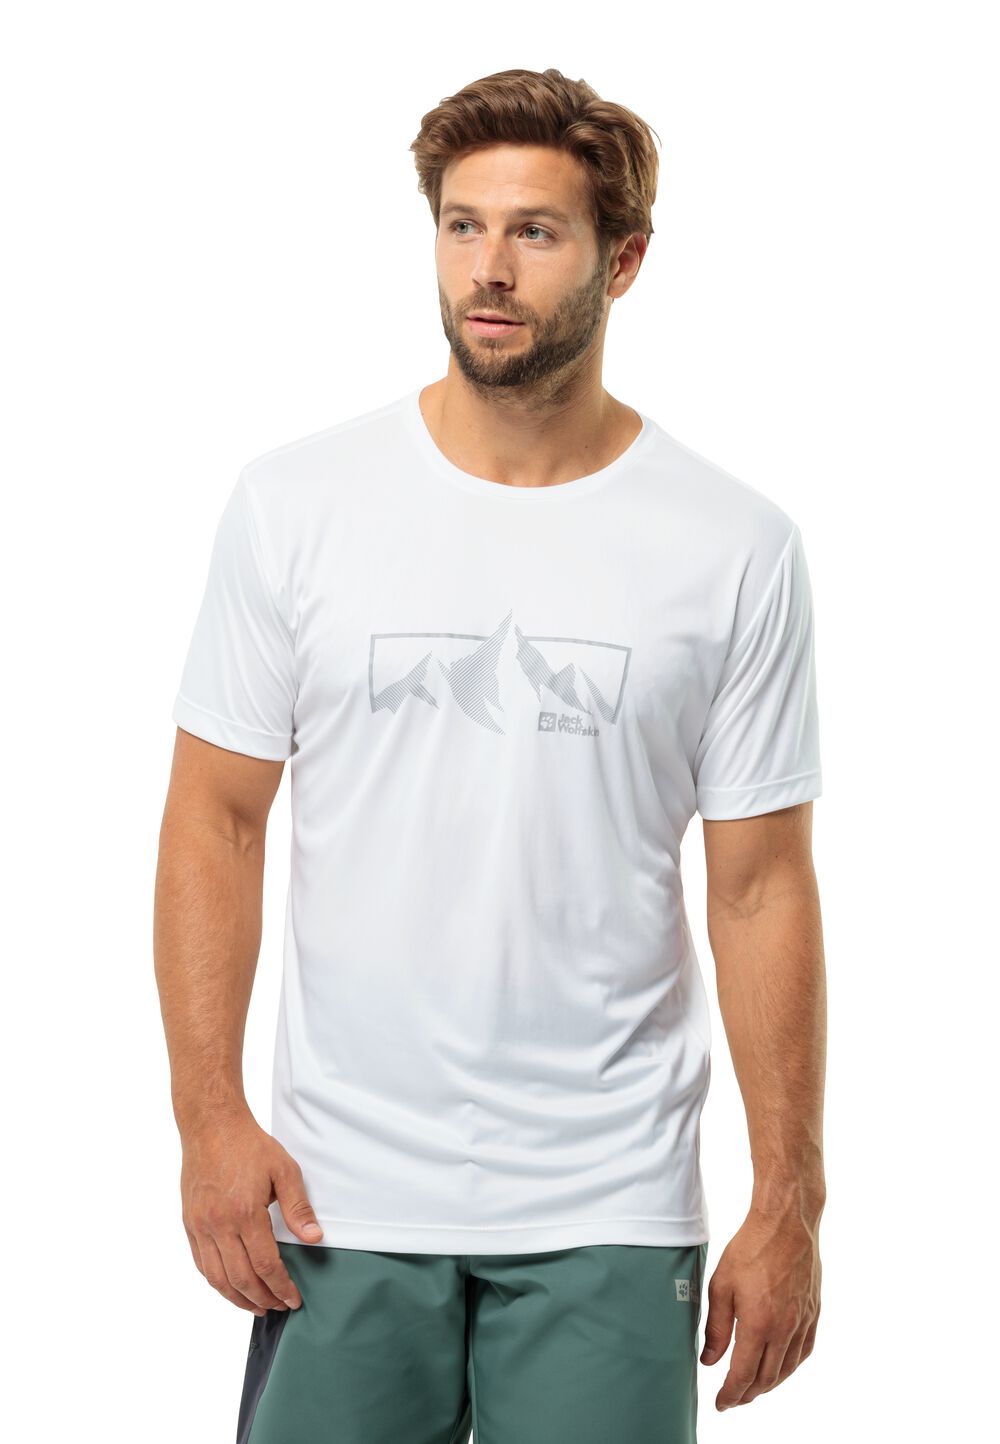 Jack Wolfskin Funktionsshirt Herren Peak Graphic T-Shirt Men XXL weiß stark white von Jack Wolfskin